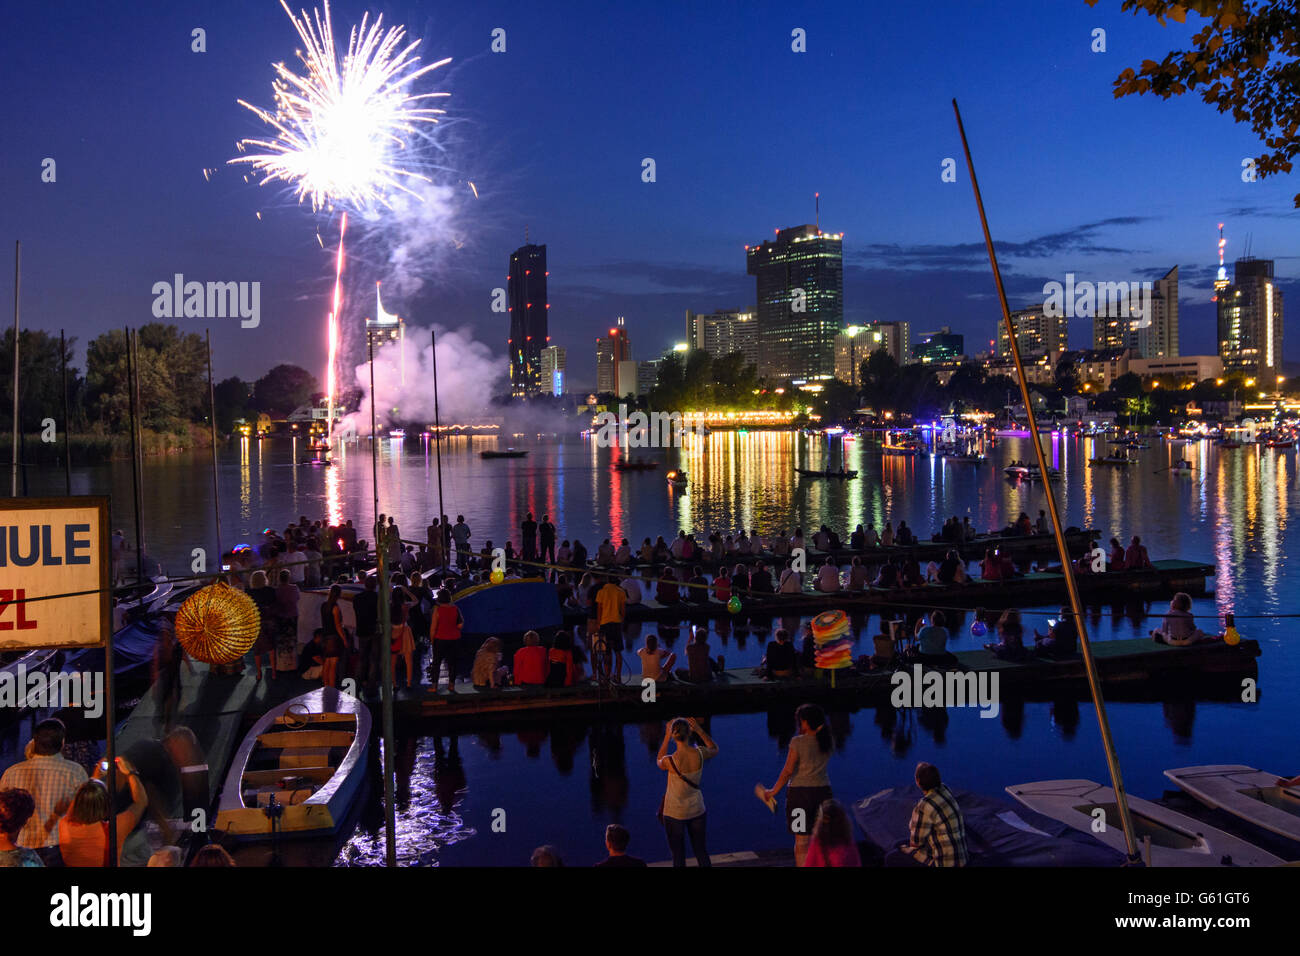 Festival der Lichter auf der alten Donau mit geschmückten Booten, Feuerwerk, Wien, Vienna, Austria, Wien, 22. Stockfoto